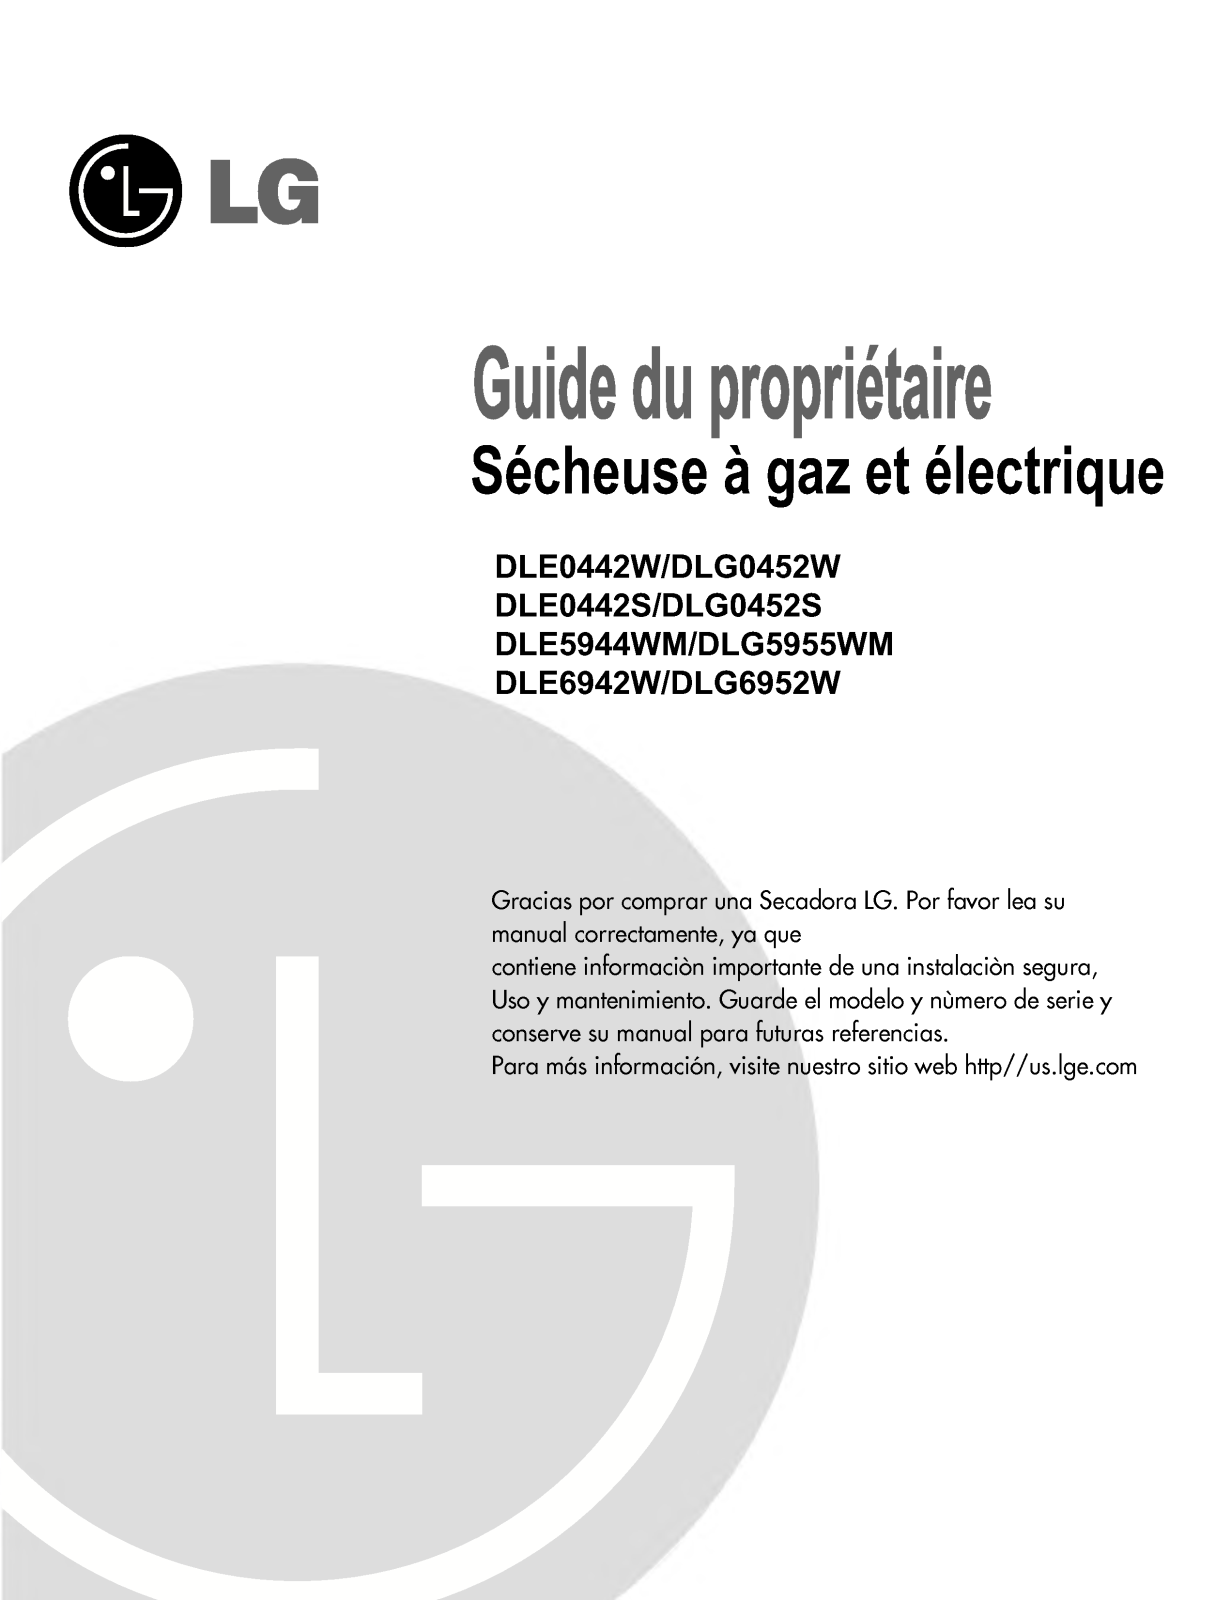 LG DLG5955WM User Manual